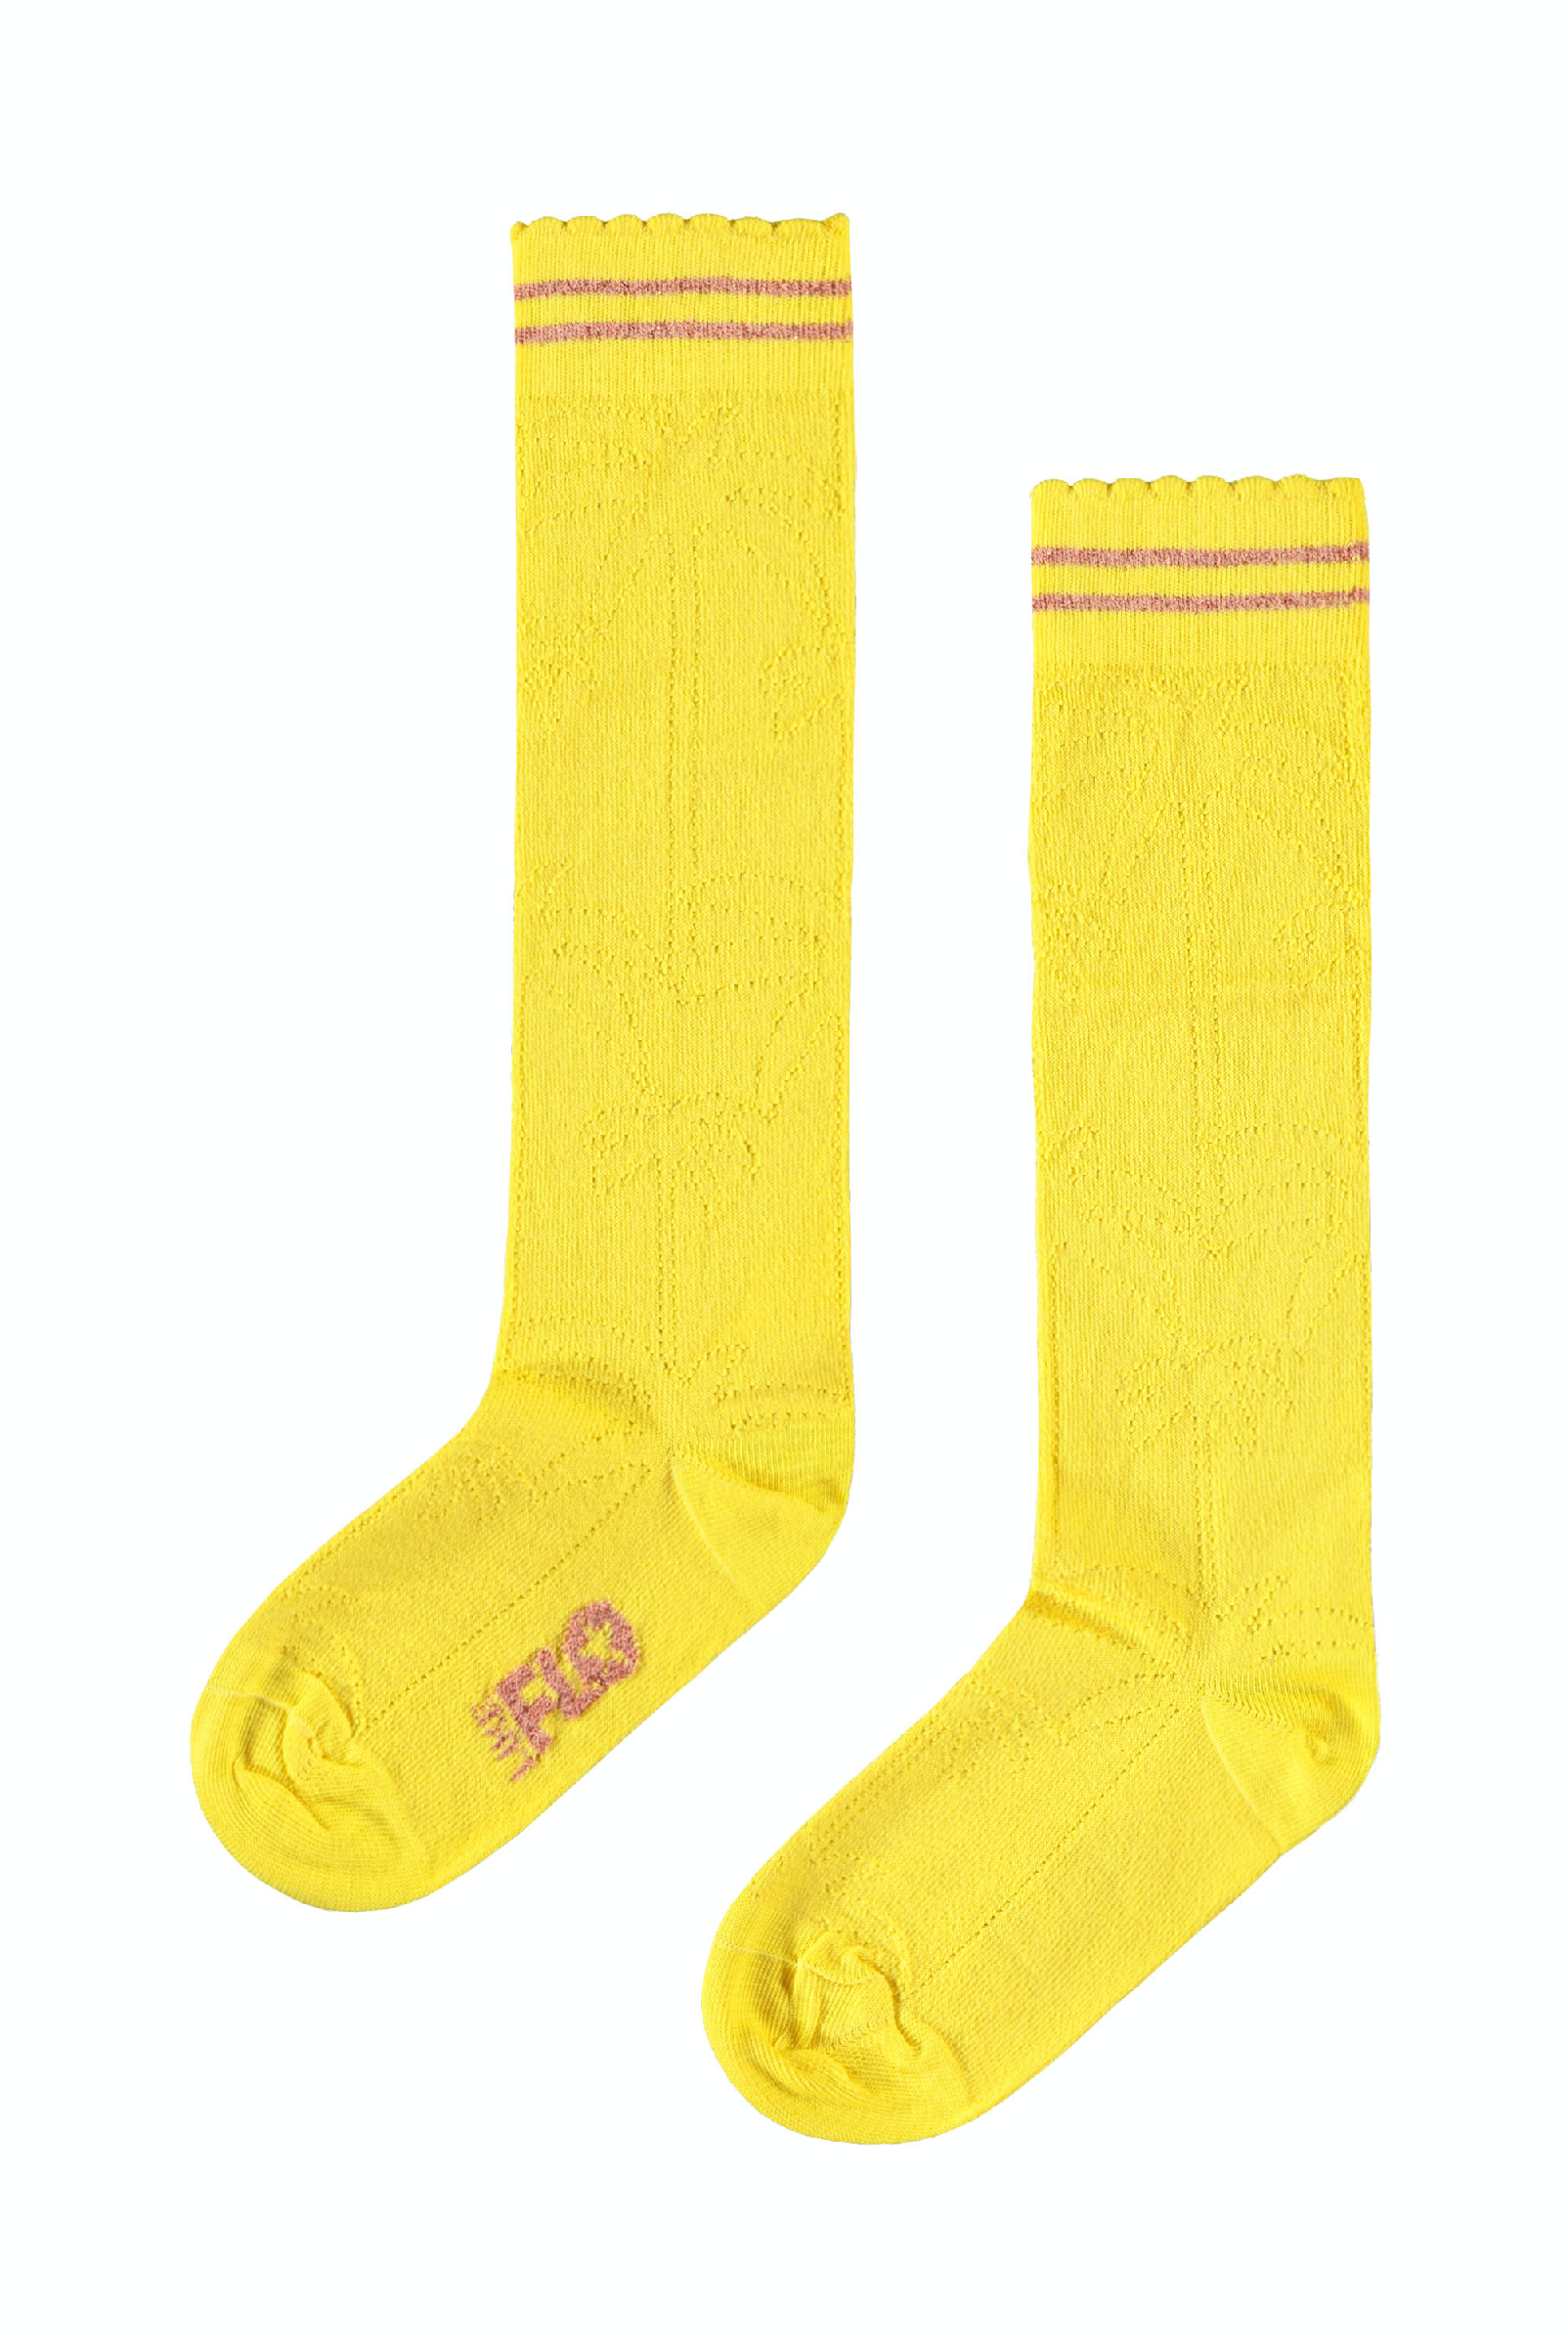 Meisjes Flo girls ajour sock divers van Flo in de kleur Yellow in maat 35, 38.